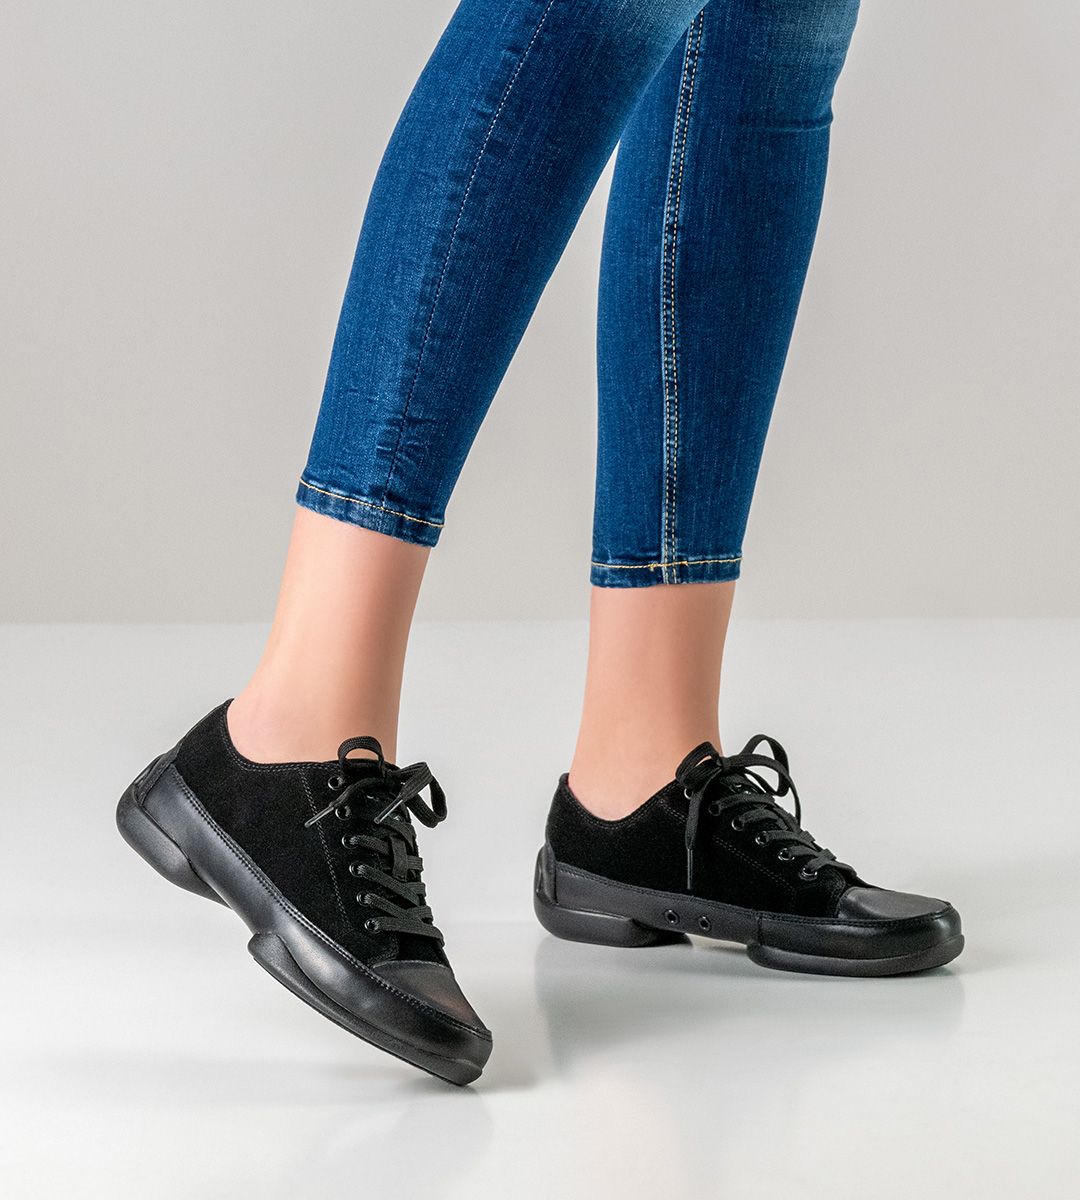 Black dance shoe for women werner kern